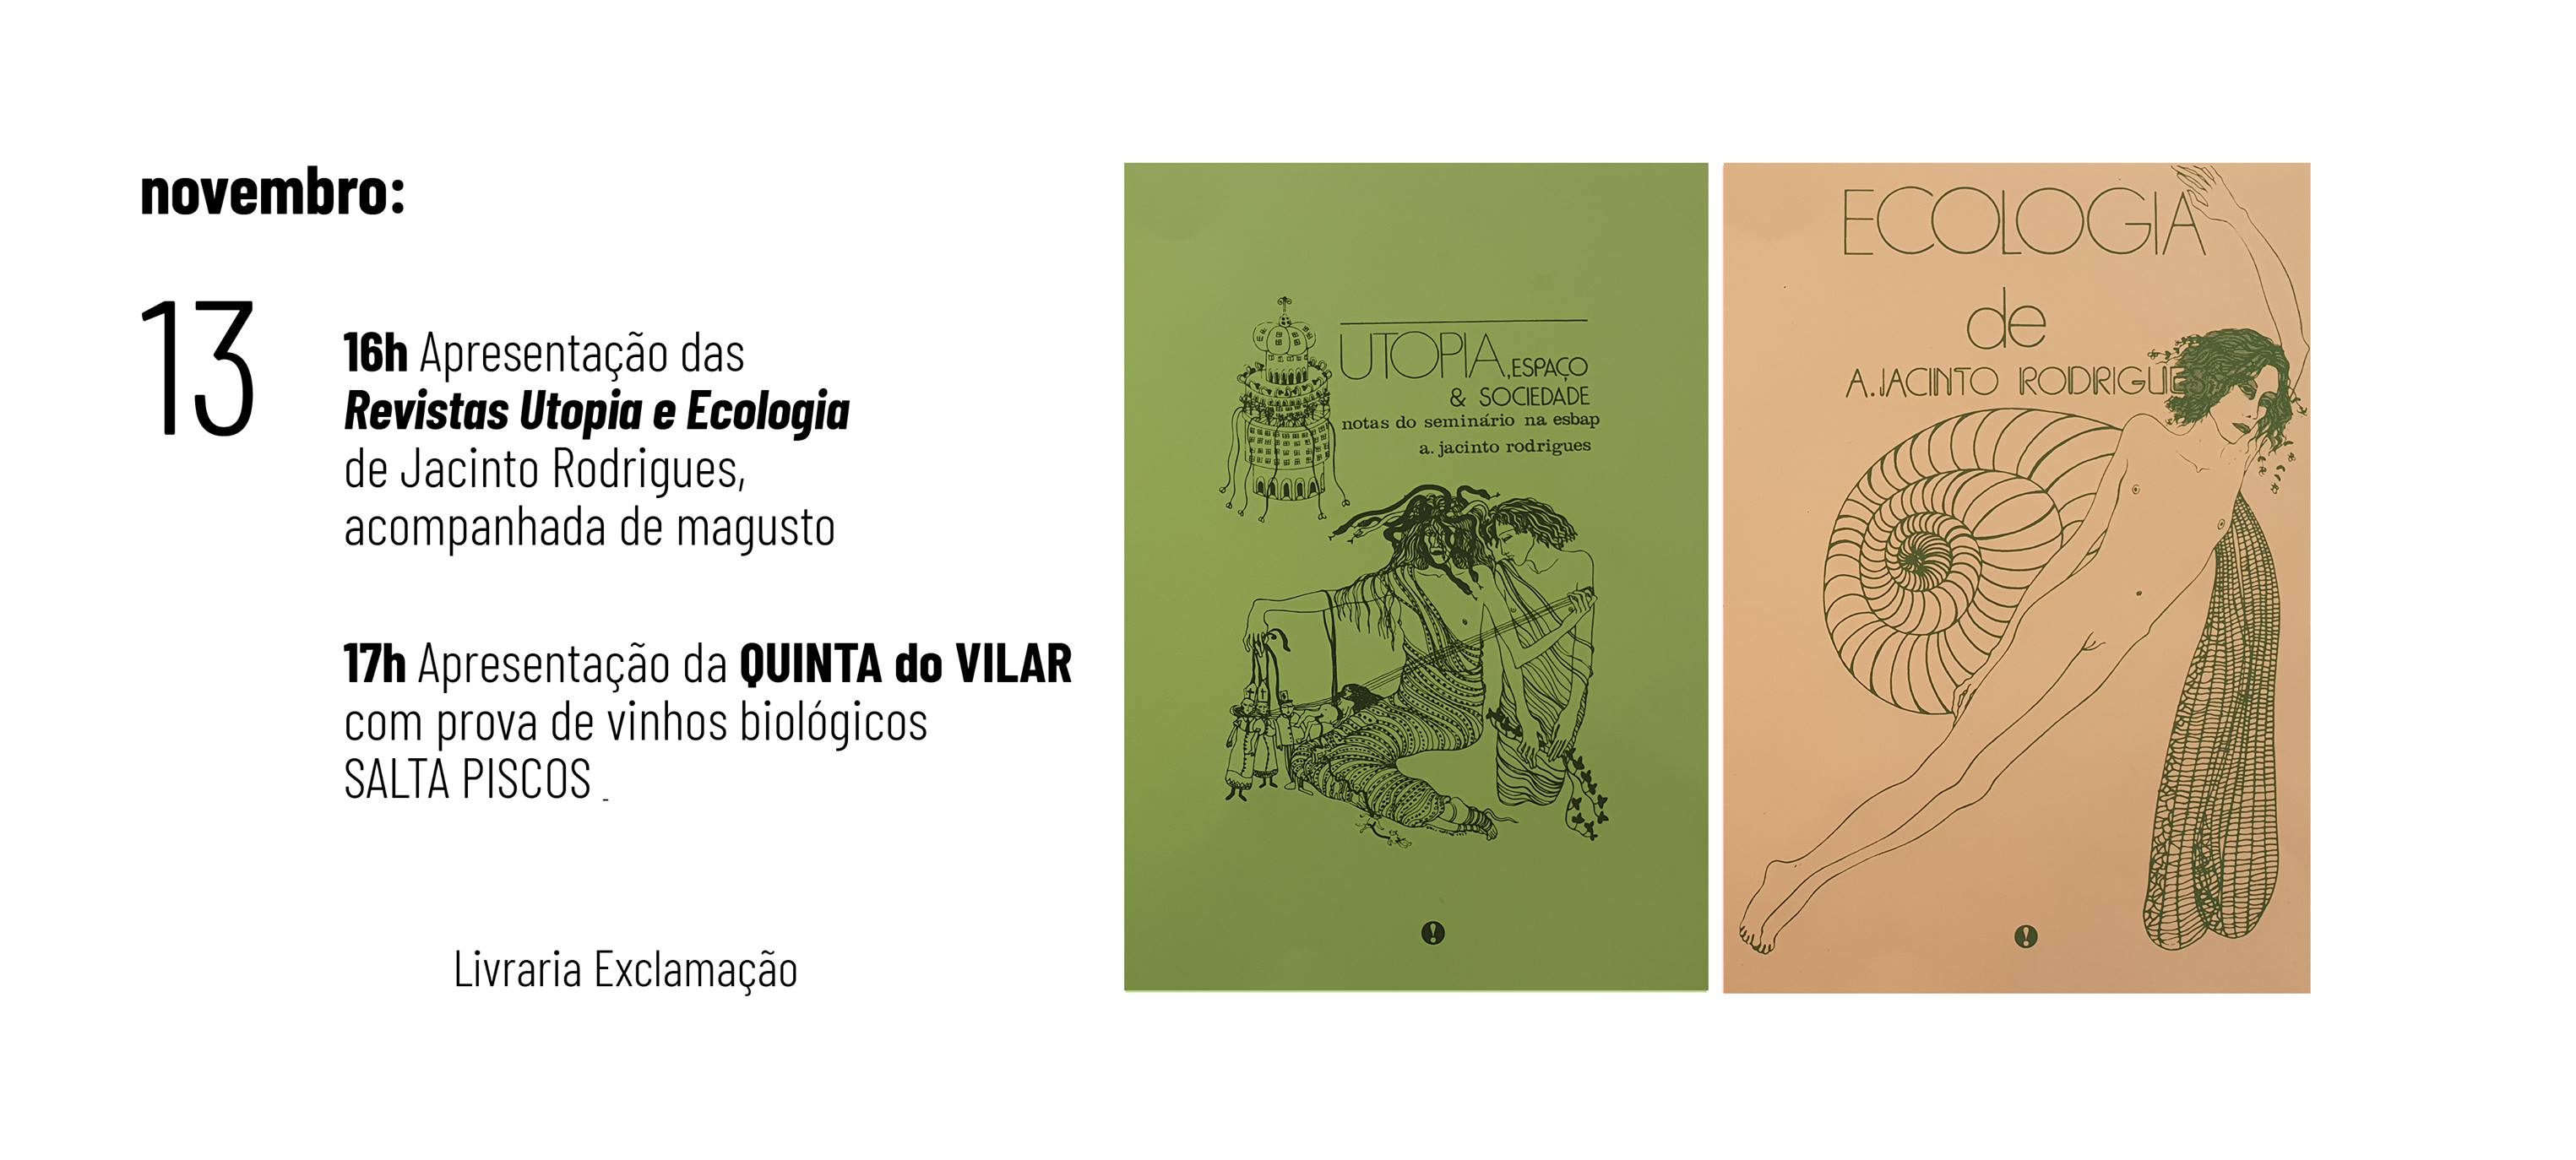 Apresentação das Revistas Utopia e Ecologia de Jacinto Rodrigues,  acompanhada de magusto